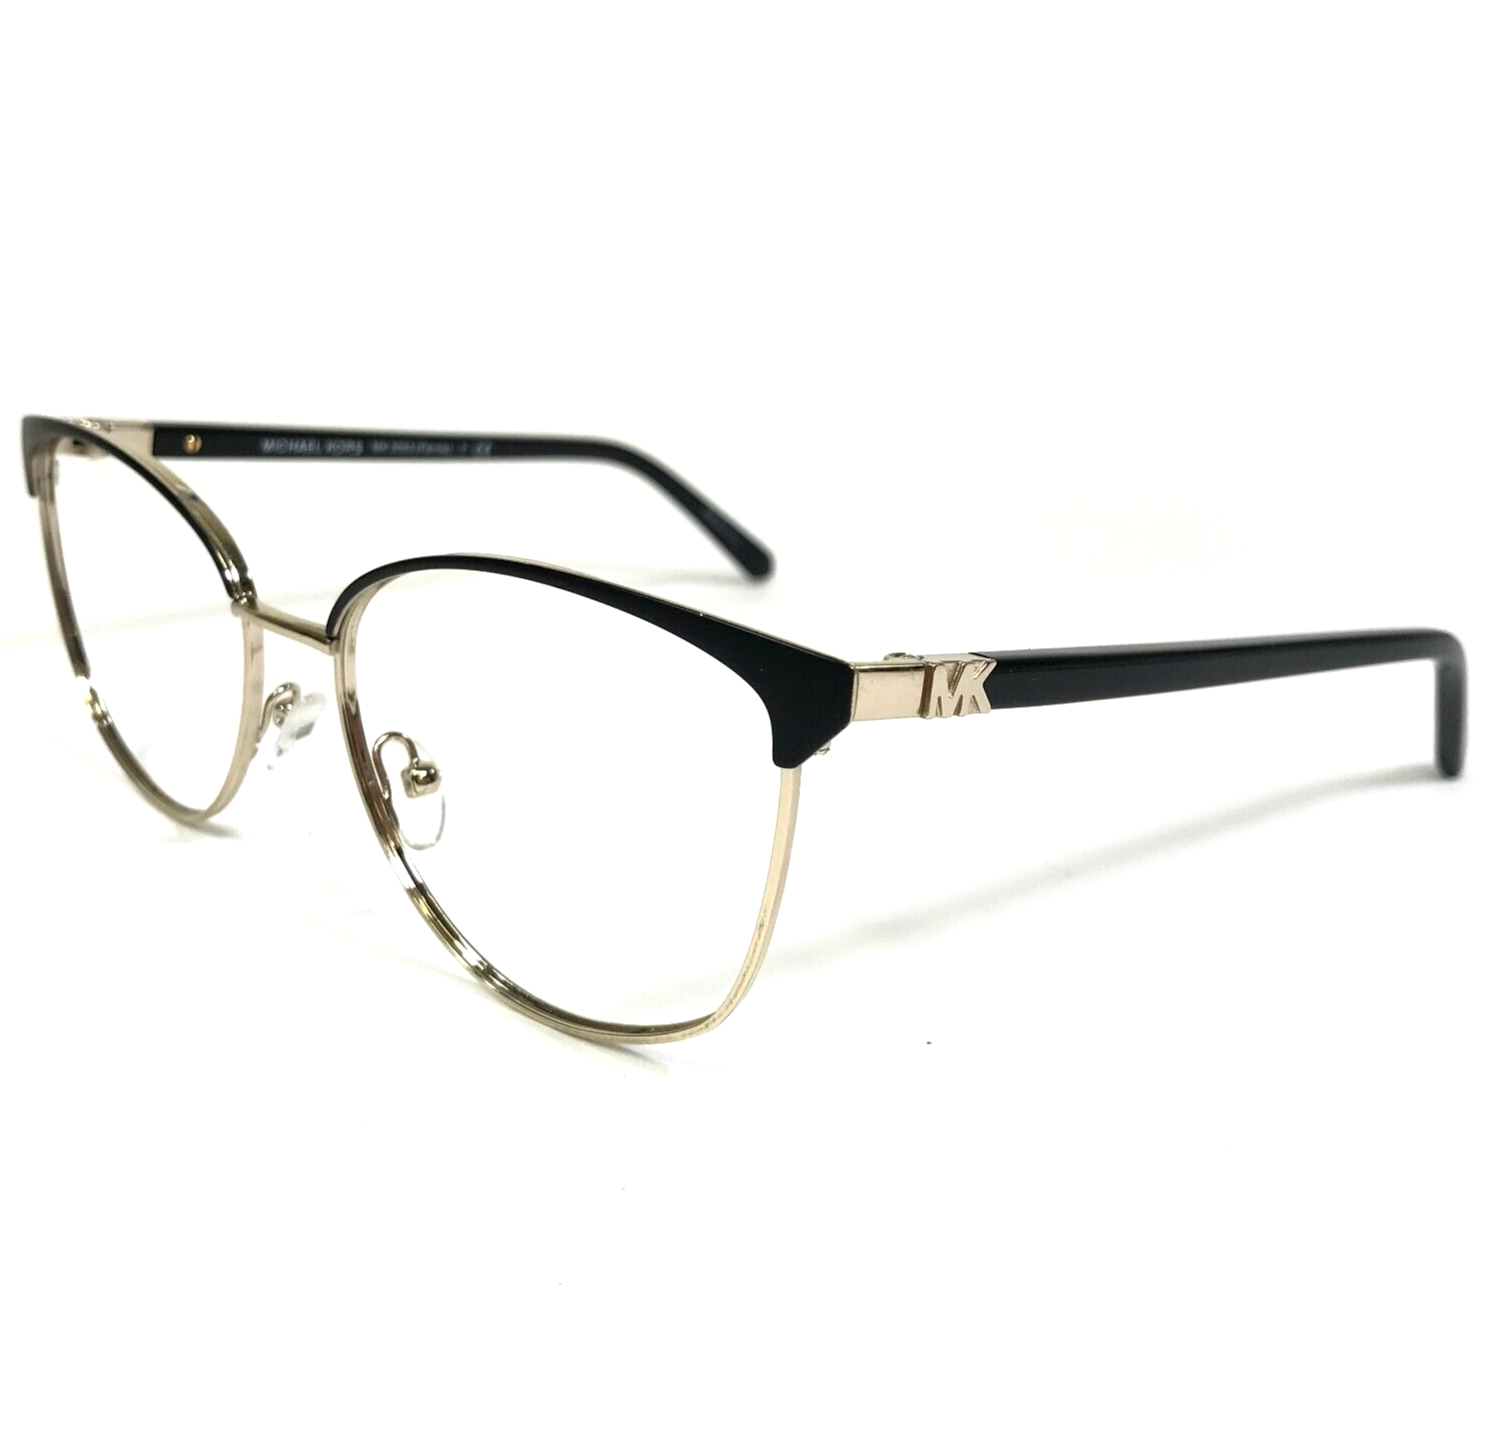 Primary image for Michael Kors Eyeglasses Frames MK 3053 Fernie 1014 Black Gold Cat Eye 54-16-140